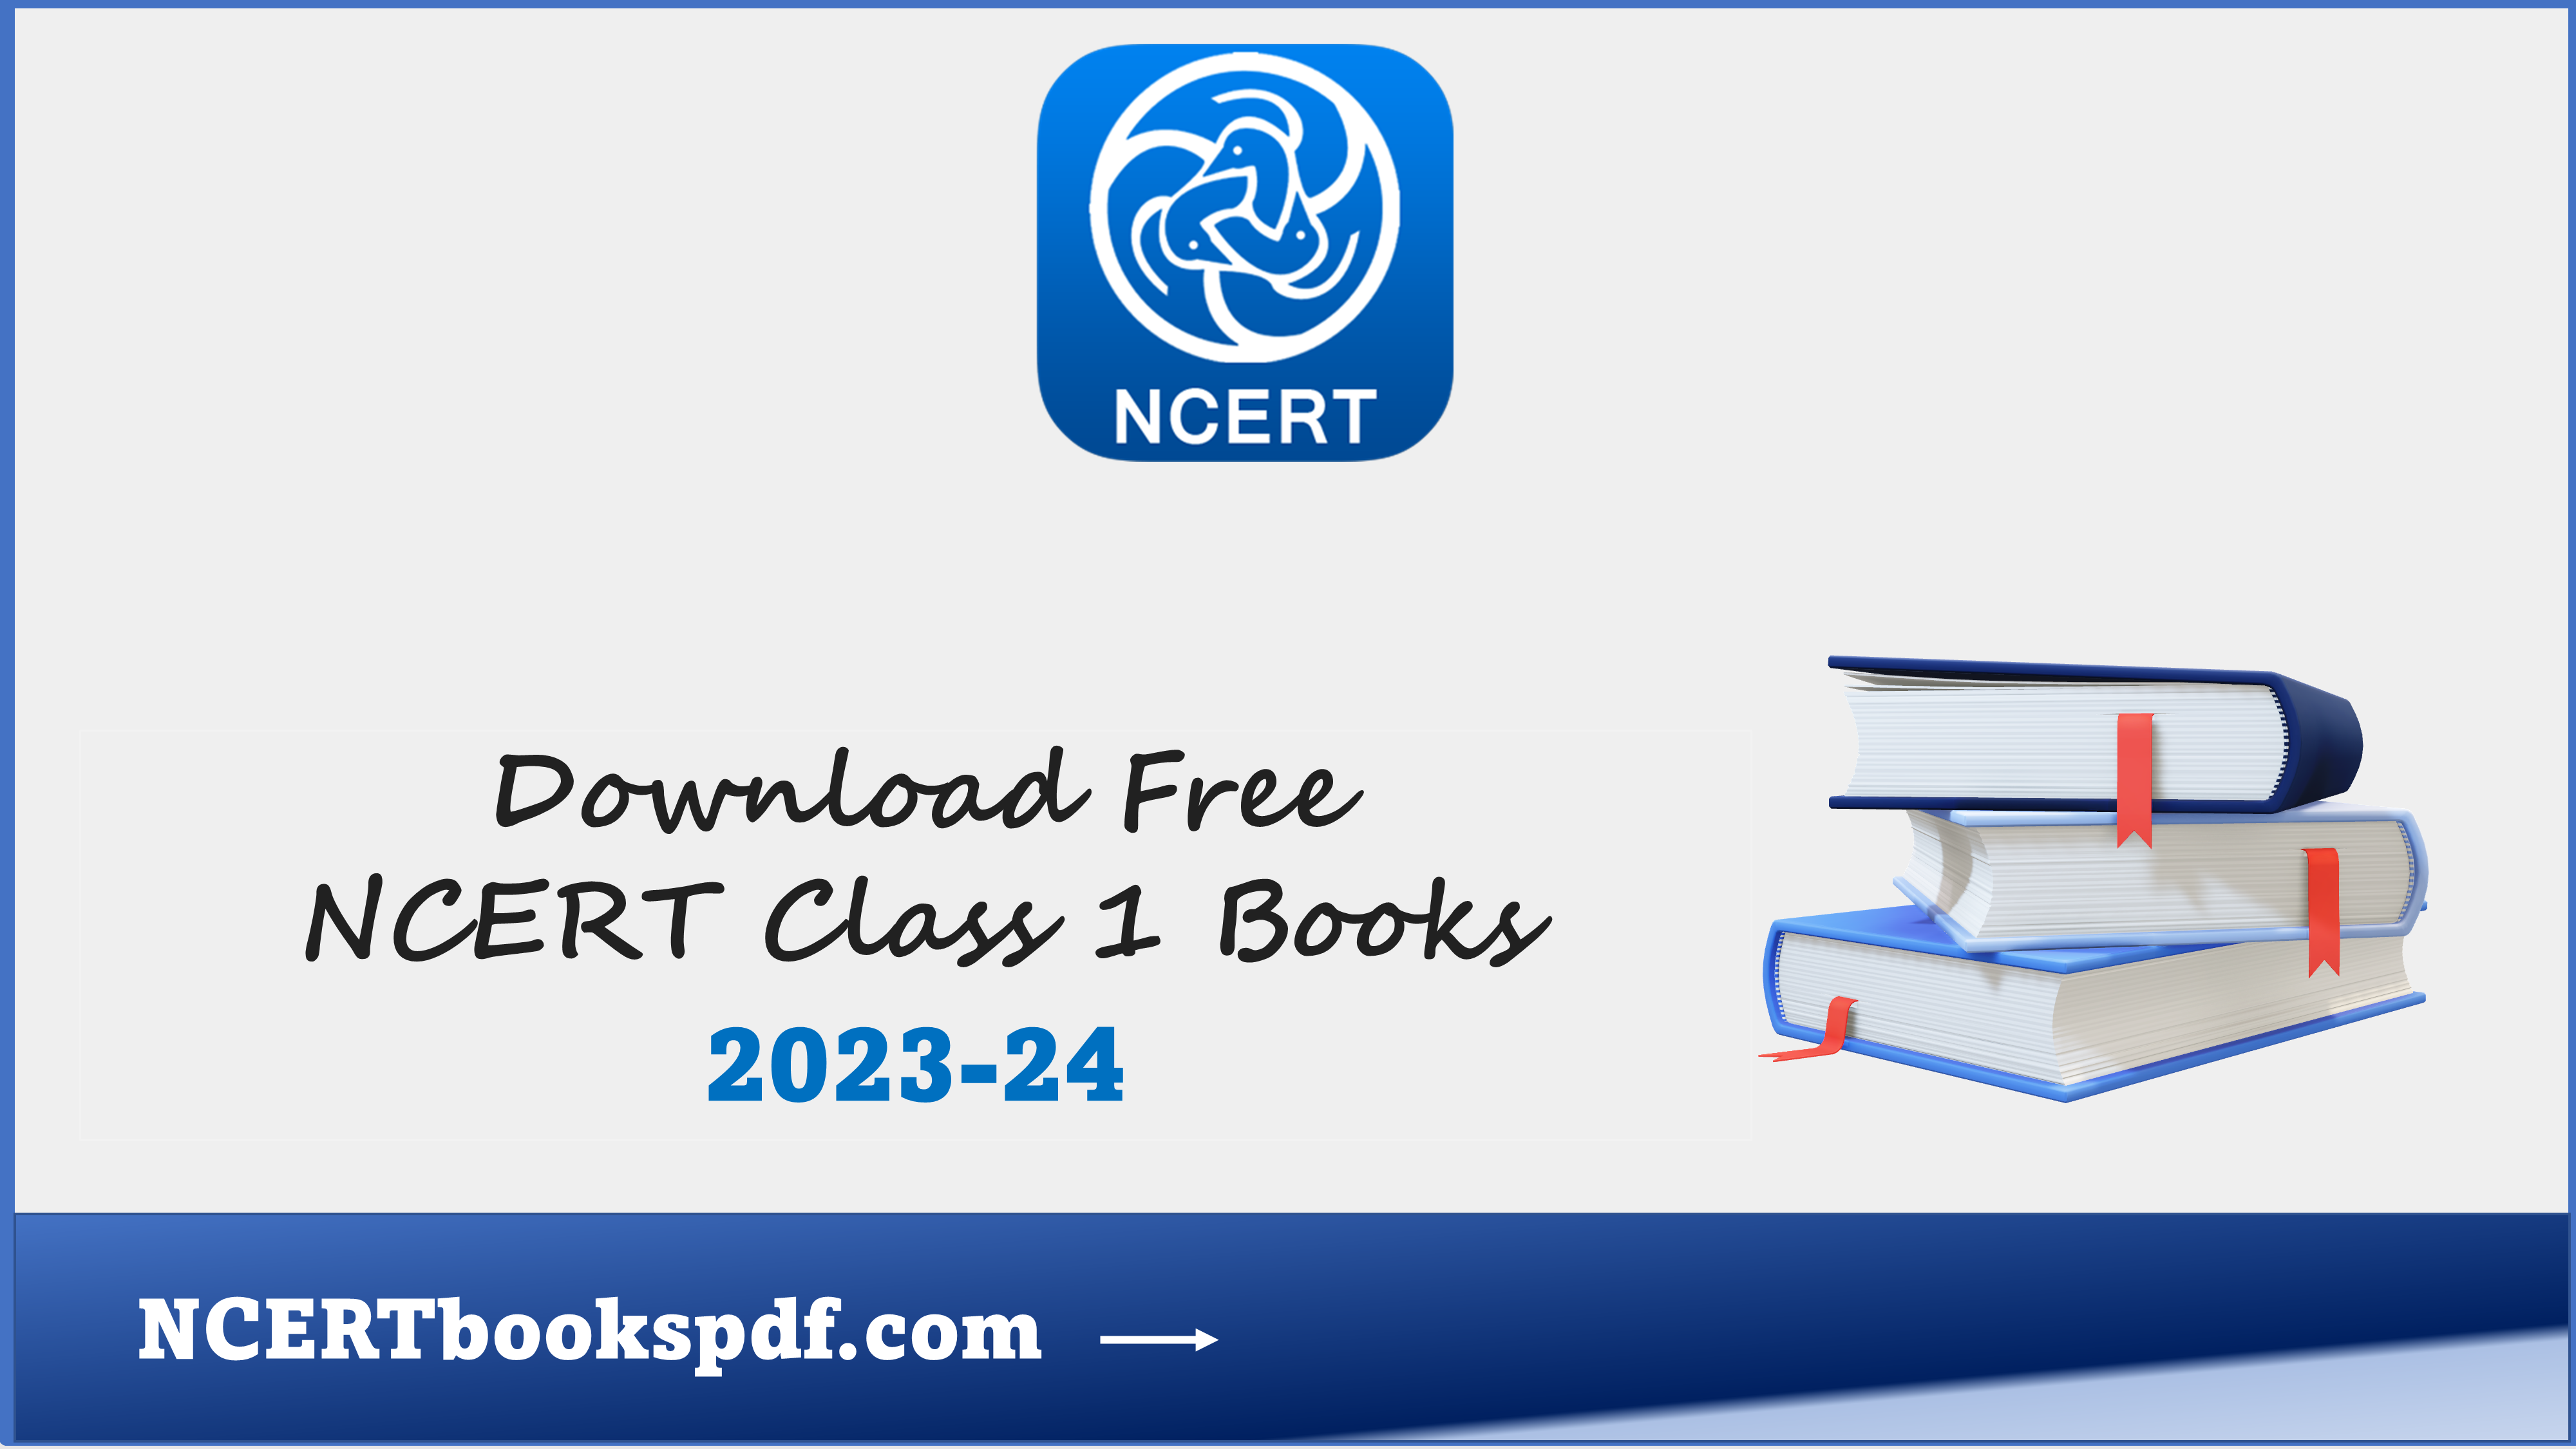 NCERT BOOKS CLASS 1